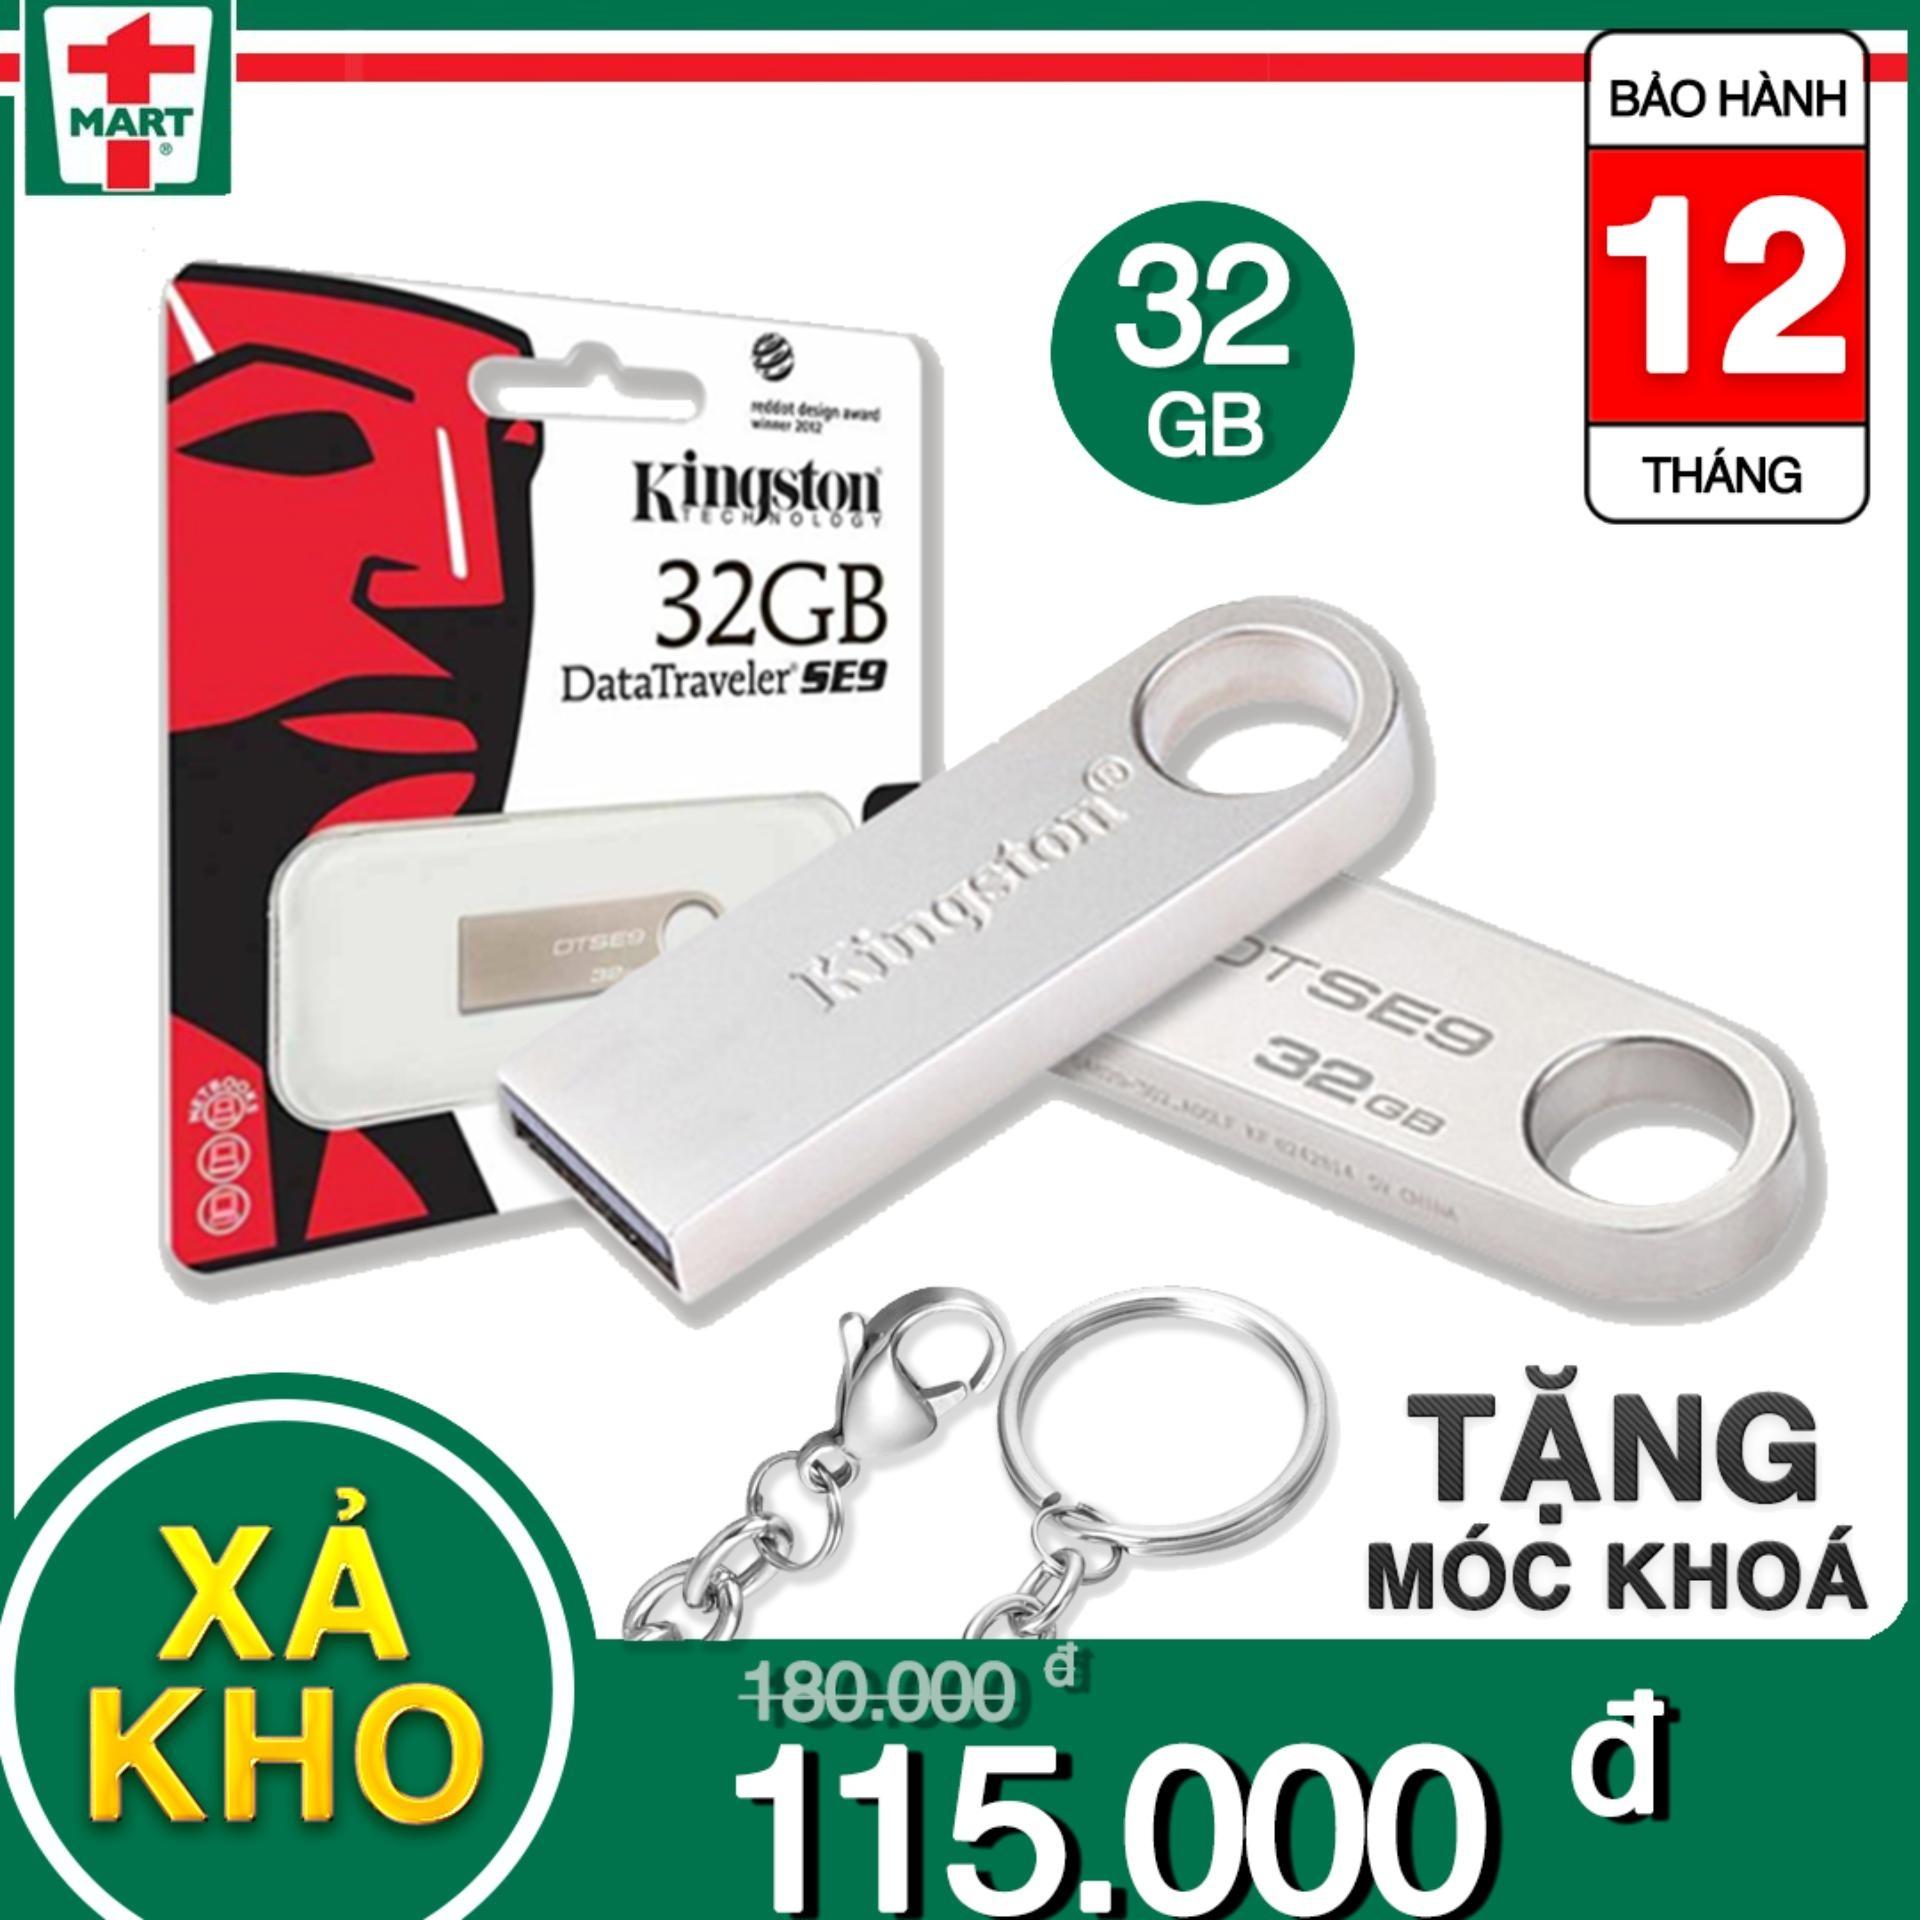 [32gb] USB Kingston DataTraveler SE9 32GB - Bảo hành 12 tháng lỗi 1 đổi 1